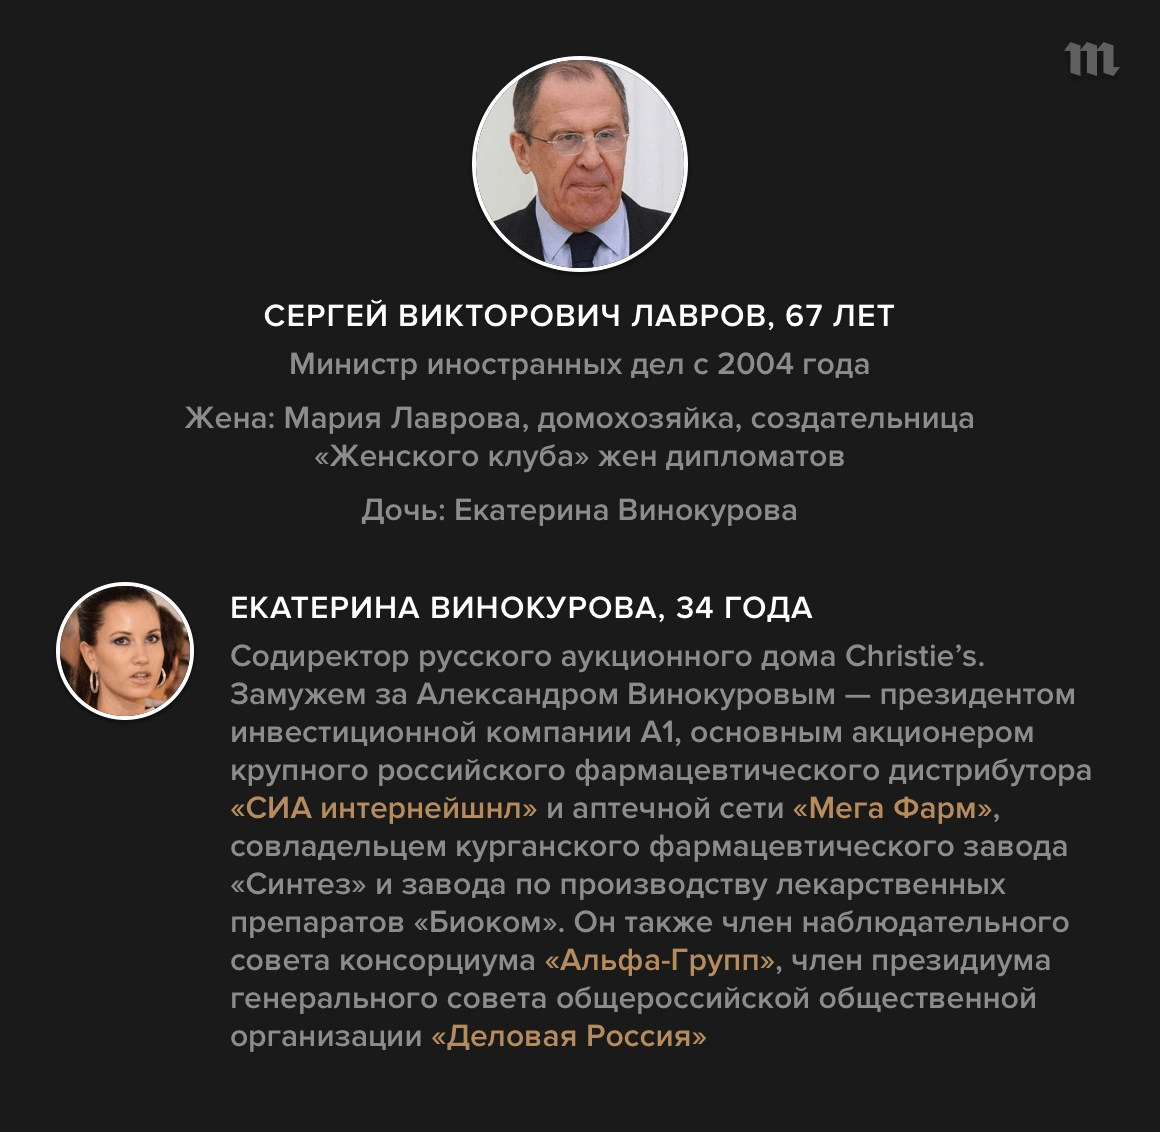 Гордон, Дмитрий Ильич — Википедия